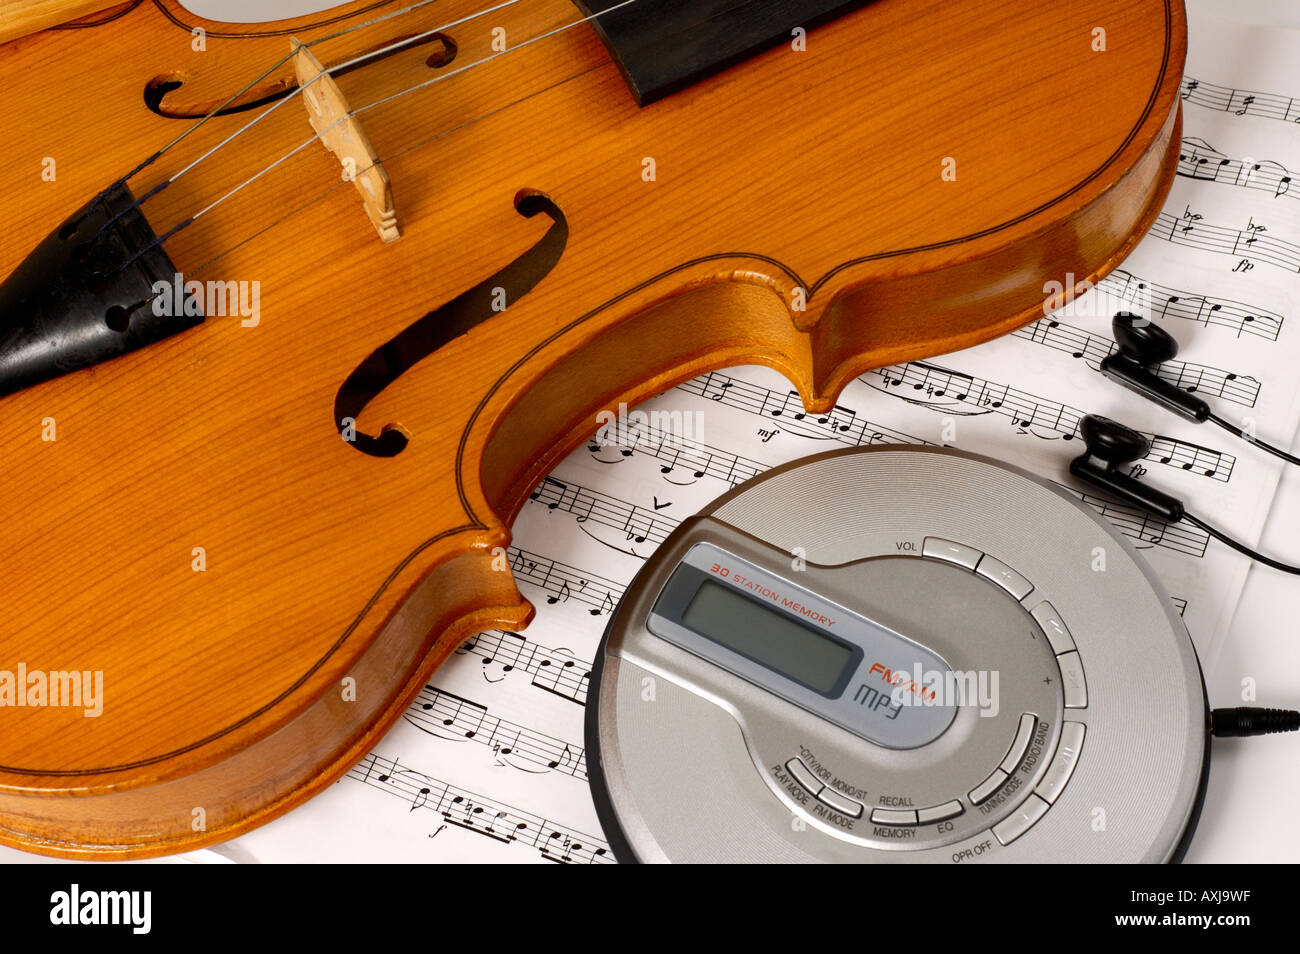 Violine und CD MP3-Player neue Generation zeitgenössischer Technologien  Musik und Musikinstrumente künstlerische konzeptionelle Stillleben  Stockfotografie - Alamy